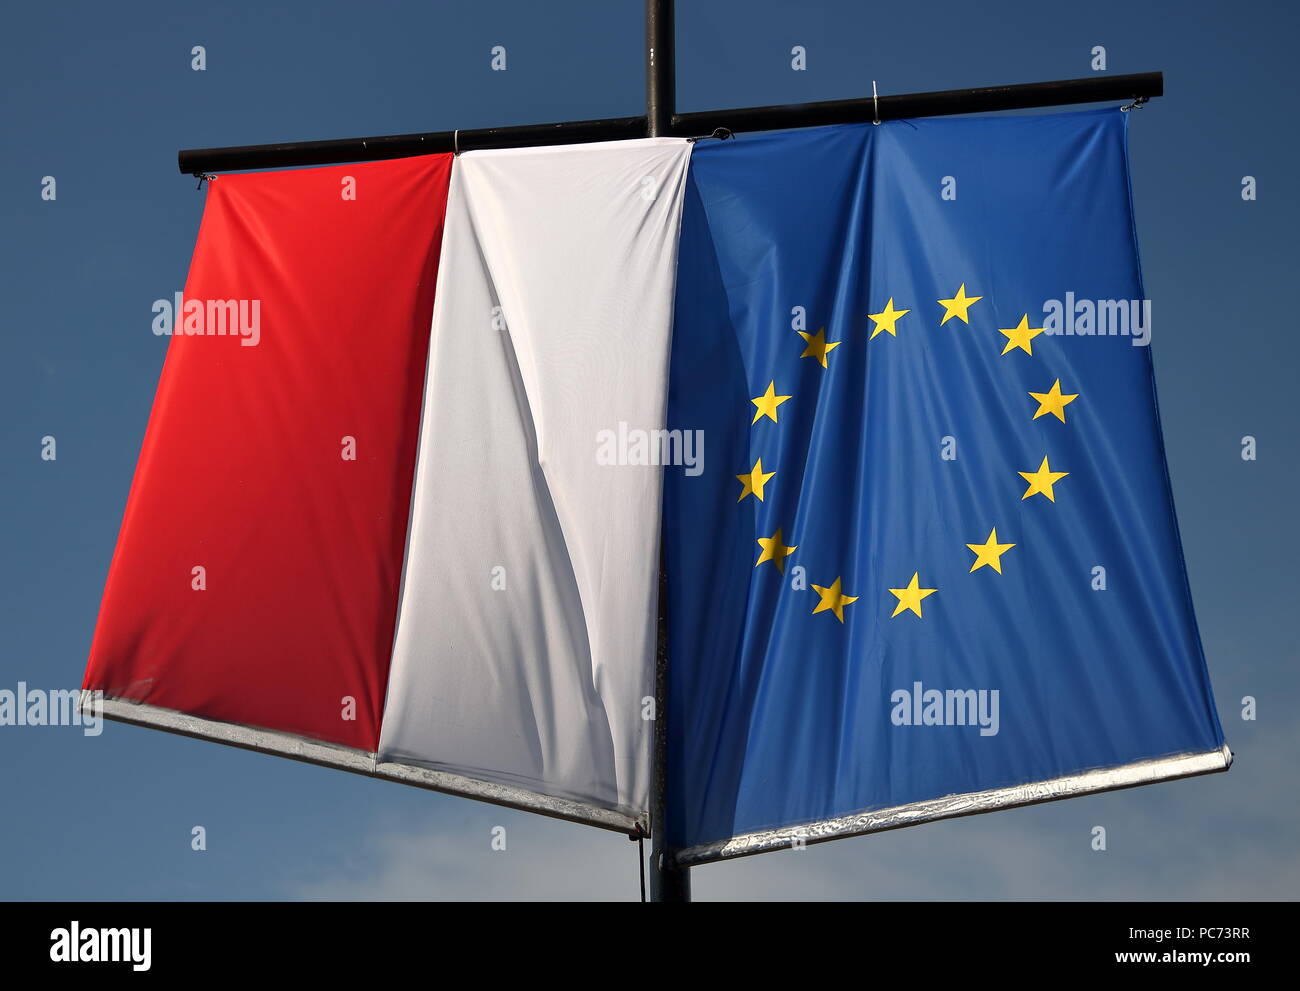 Drapeau national de la Pologne et du drapeau de l'Union européenne traînent ensemble, les uns à côté des autres, sur le poteau, extérieur, ciel bleu en arrière-plan Banque D'Images